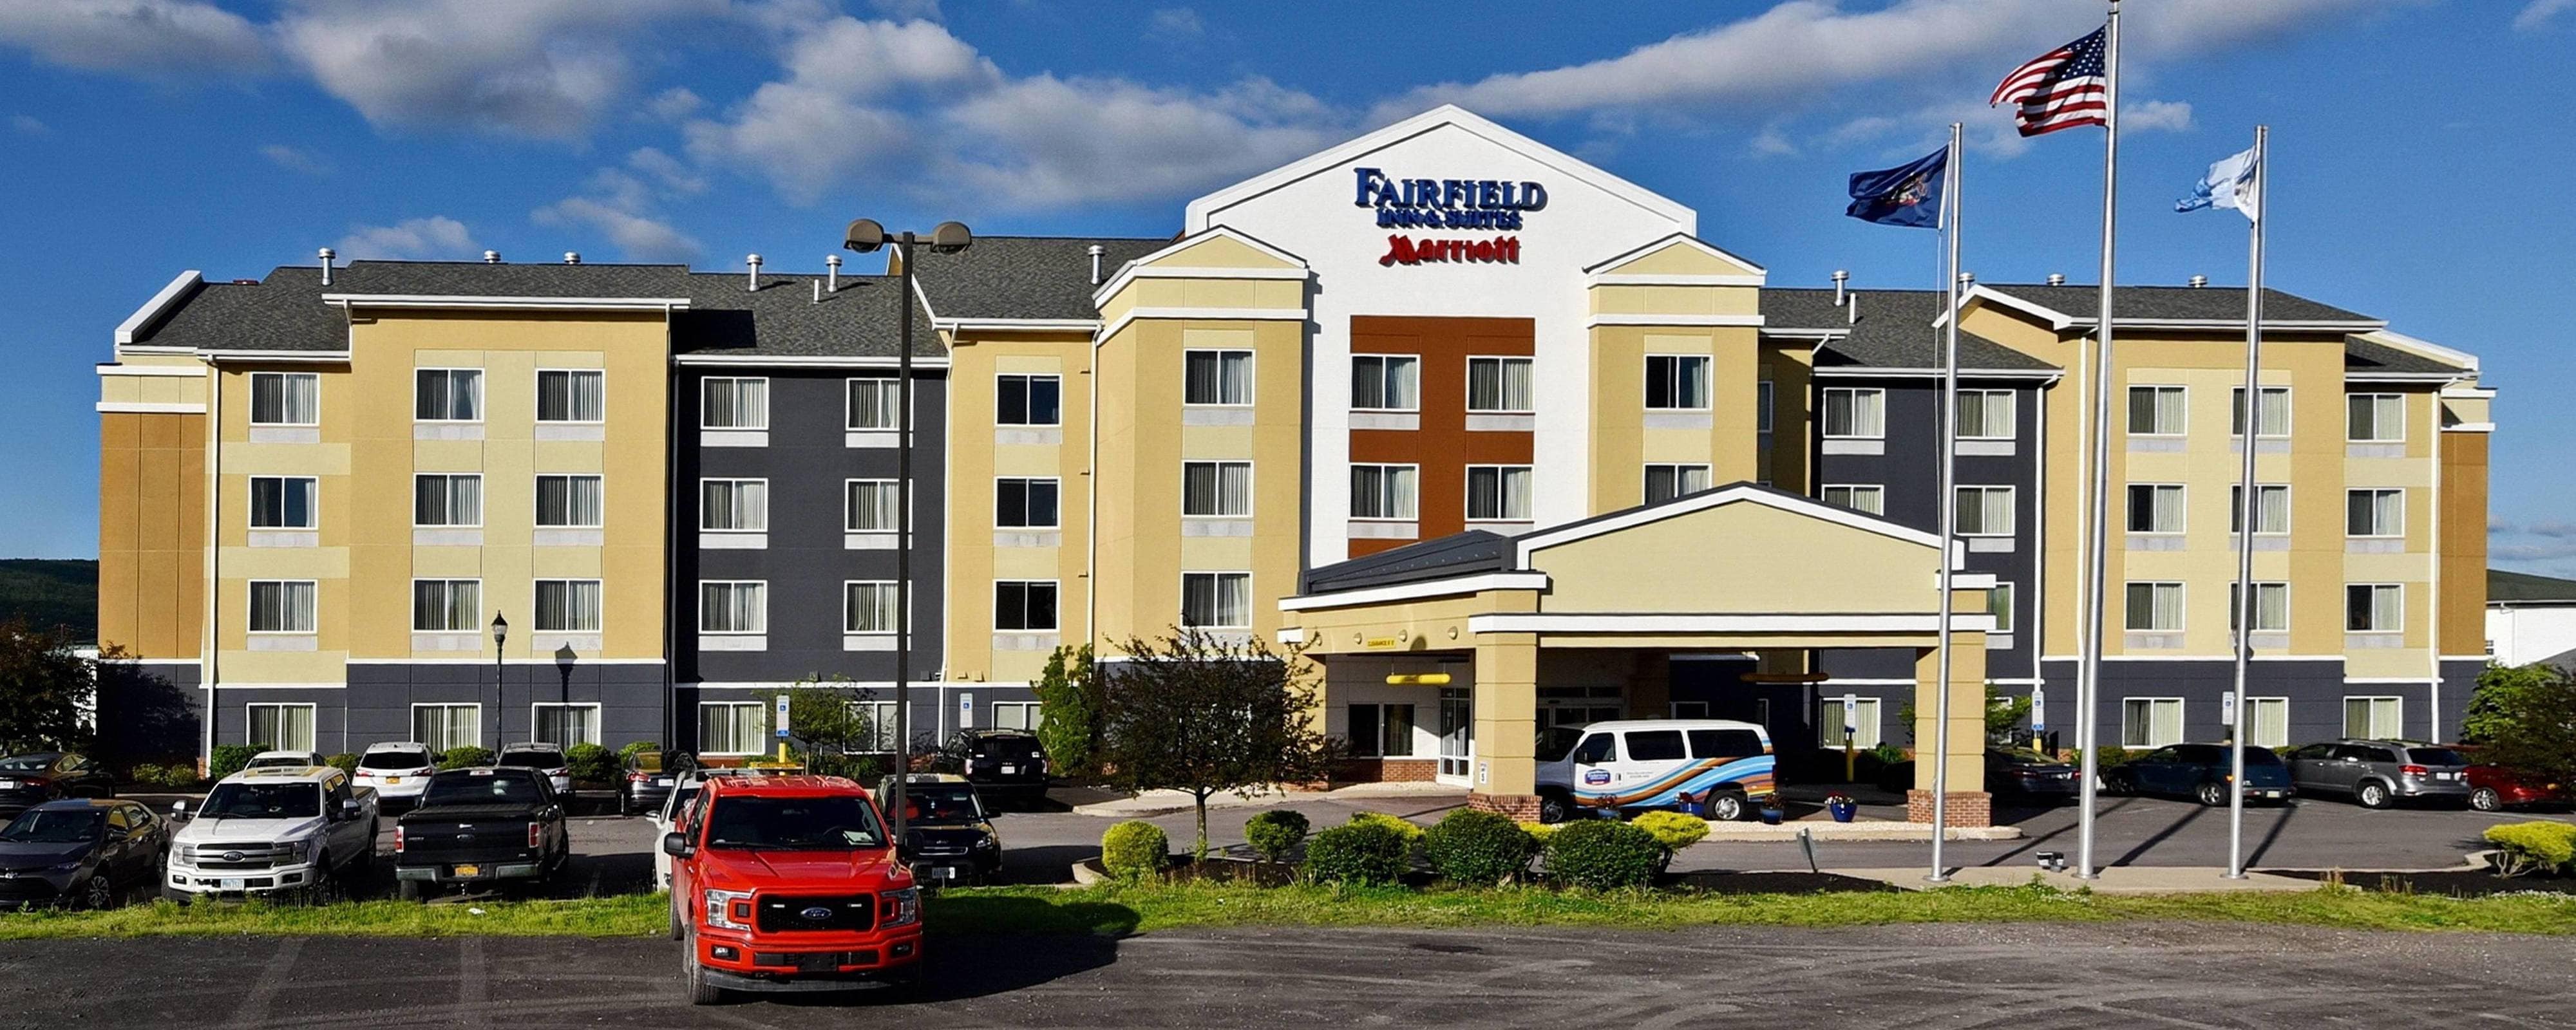 H  tel Fairfield Inn Suites Wilkes Barre Scranton H  tel Wilkes-Barre